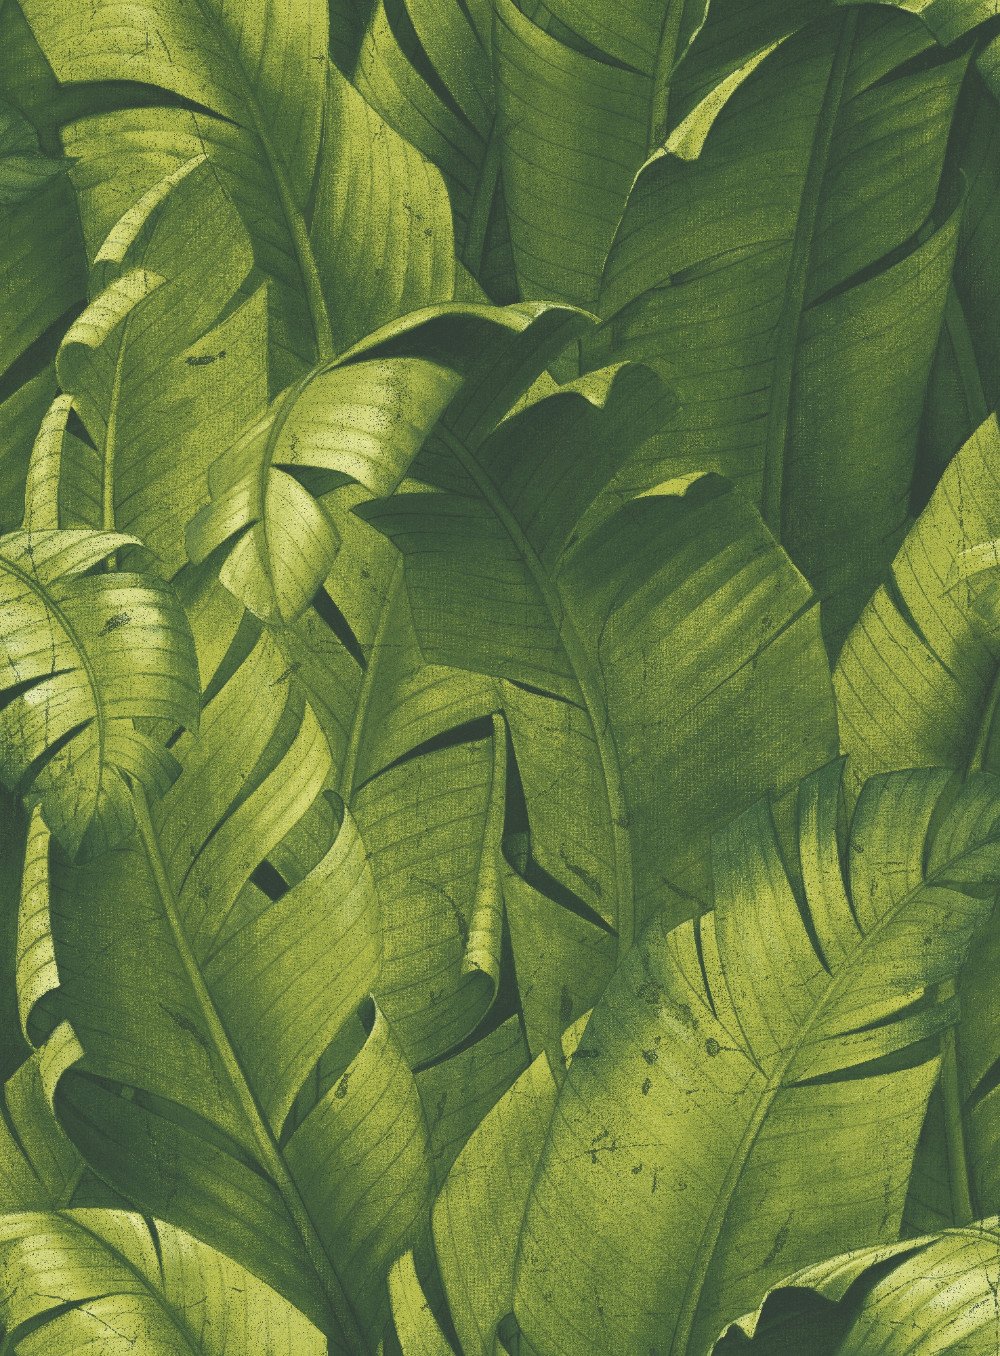 grüne schale und stick tapete,blatt,pflanze,bananenblatt,blume,muster